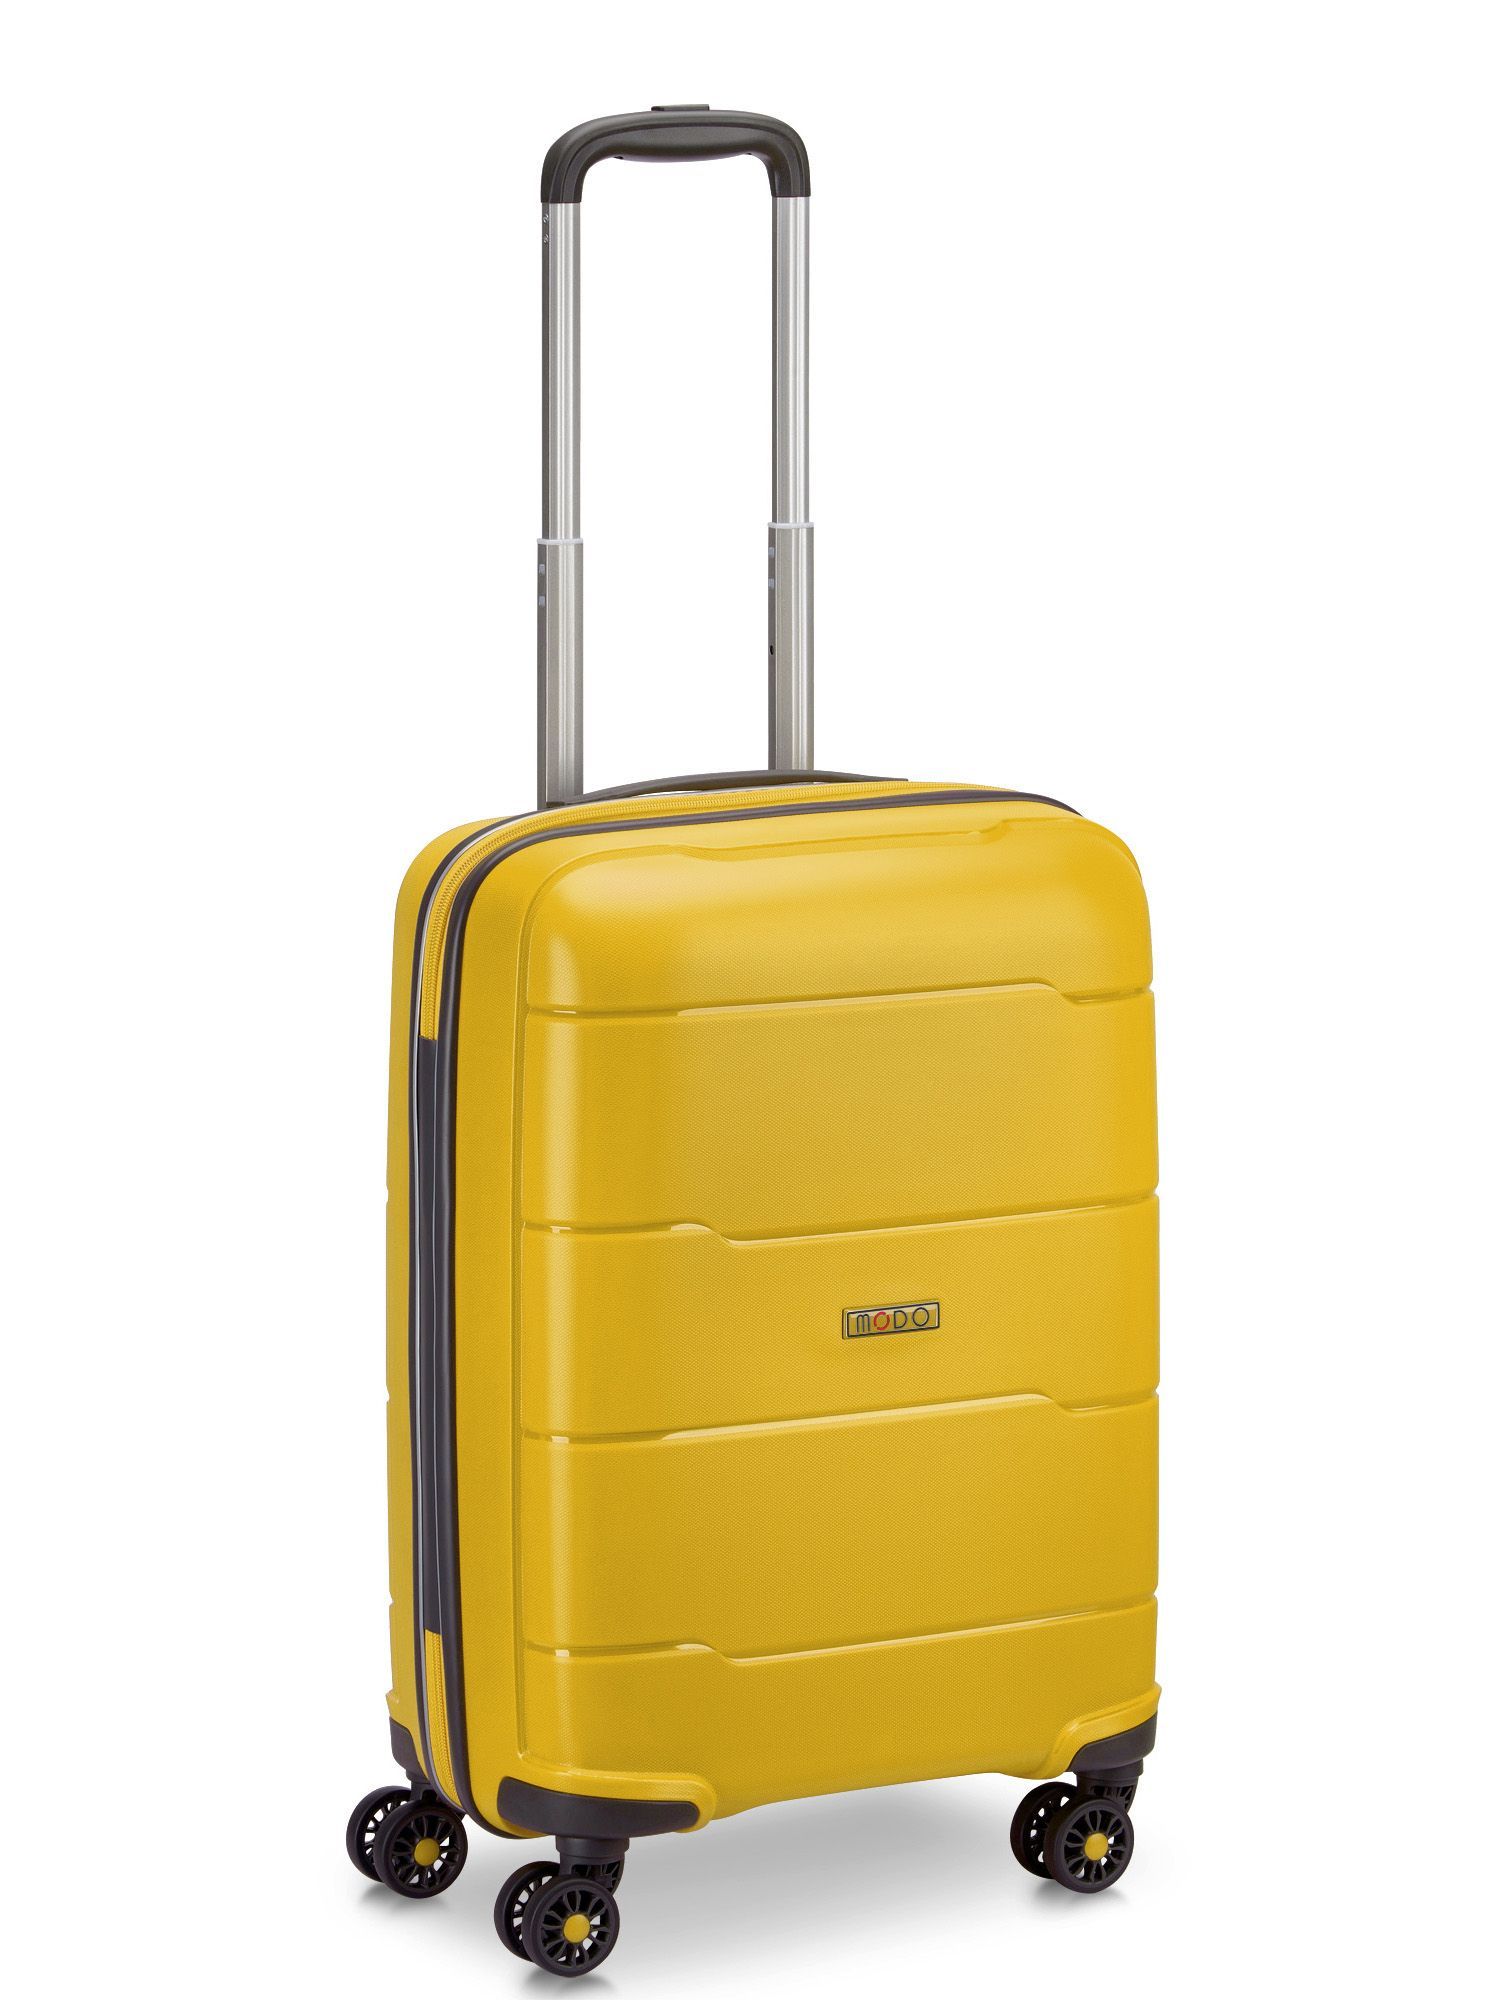 Чемодан приключений. Valigeria Roncato чемоданы. Roncato чемодан 120 KNHJD. Чемодан самсунг.